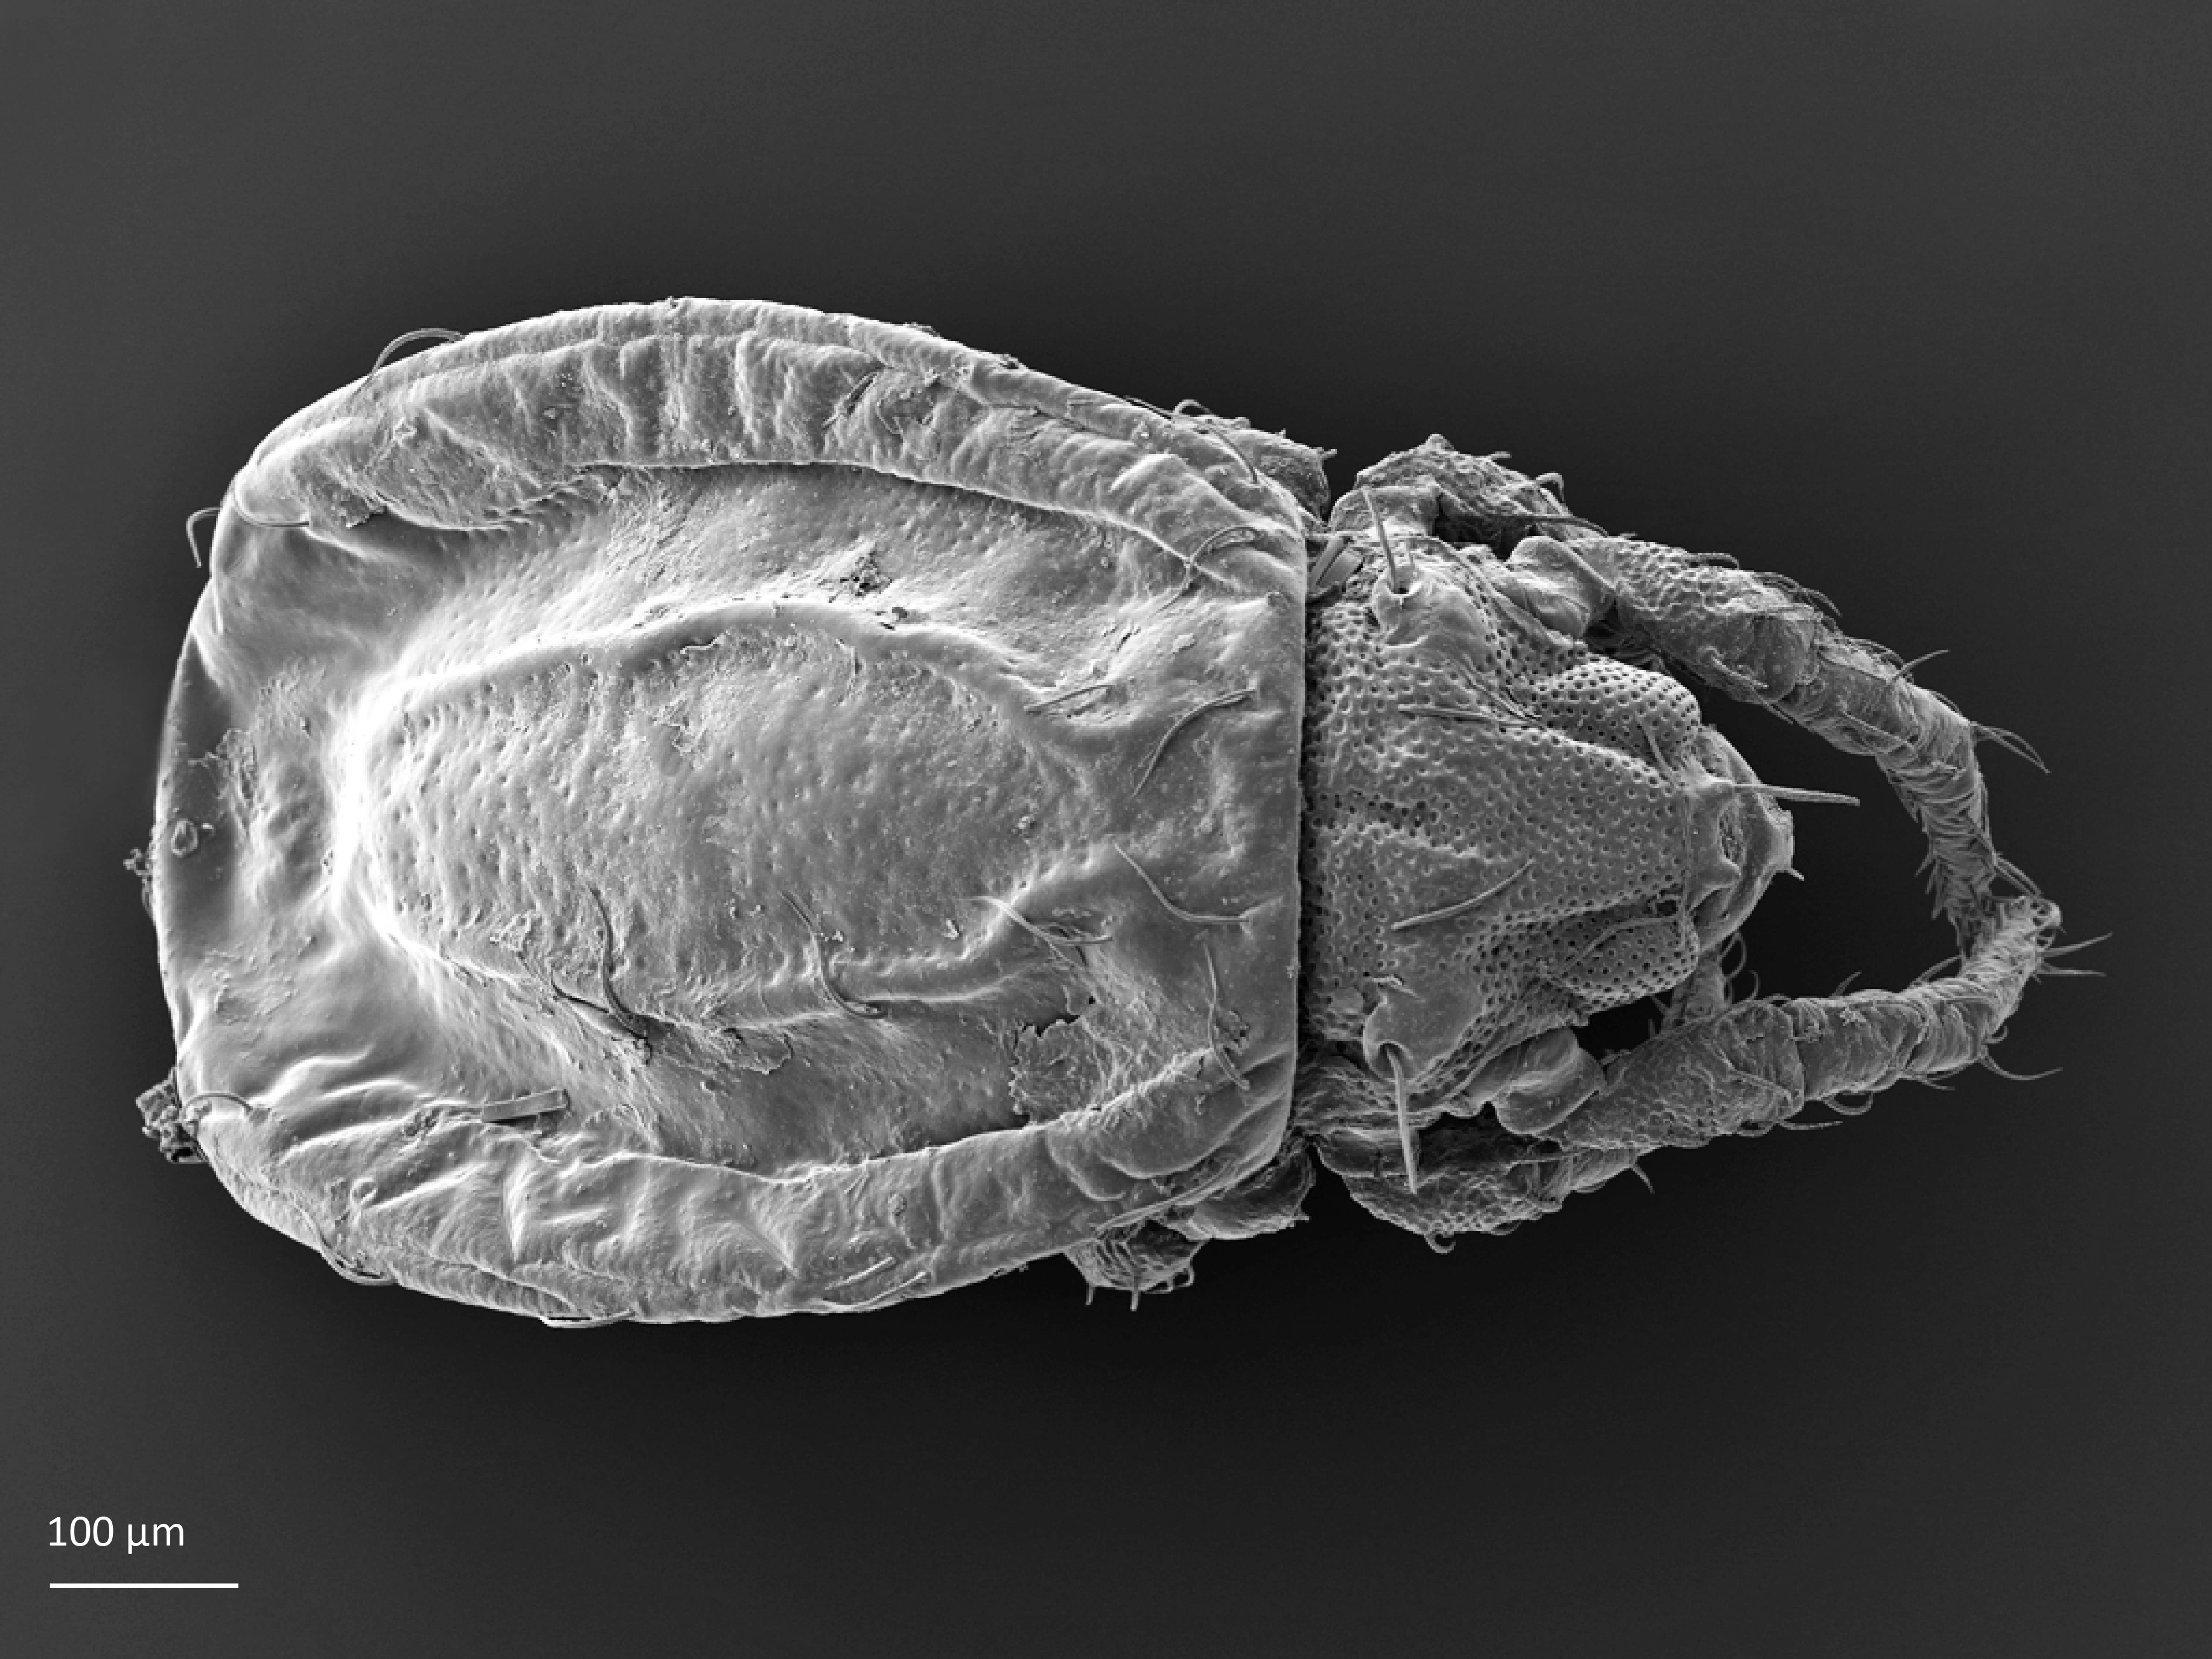 Midd: Platynothrus coulsoni.